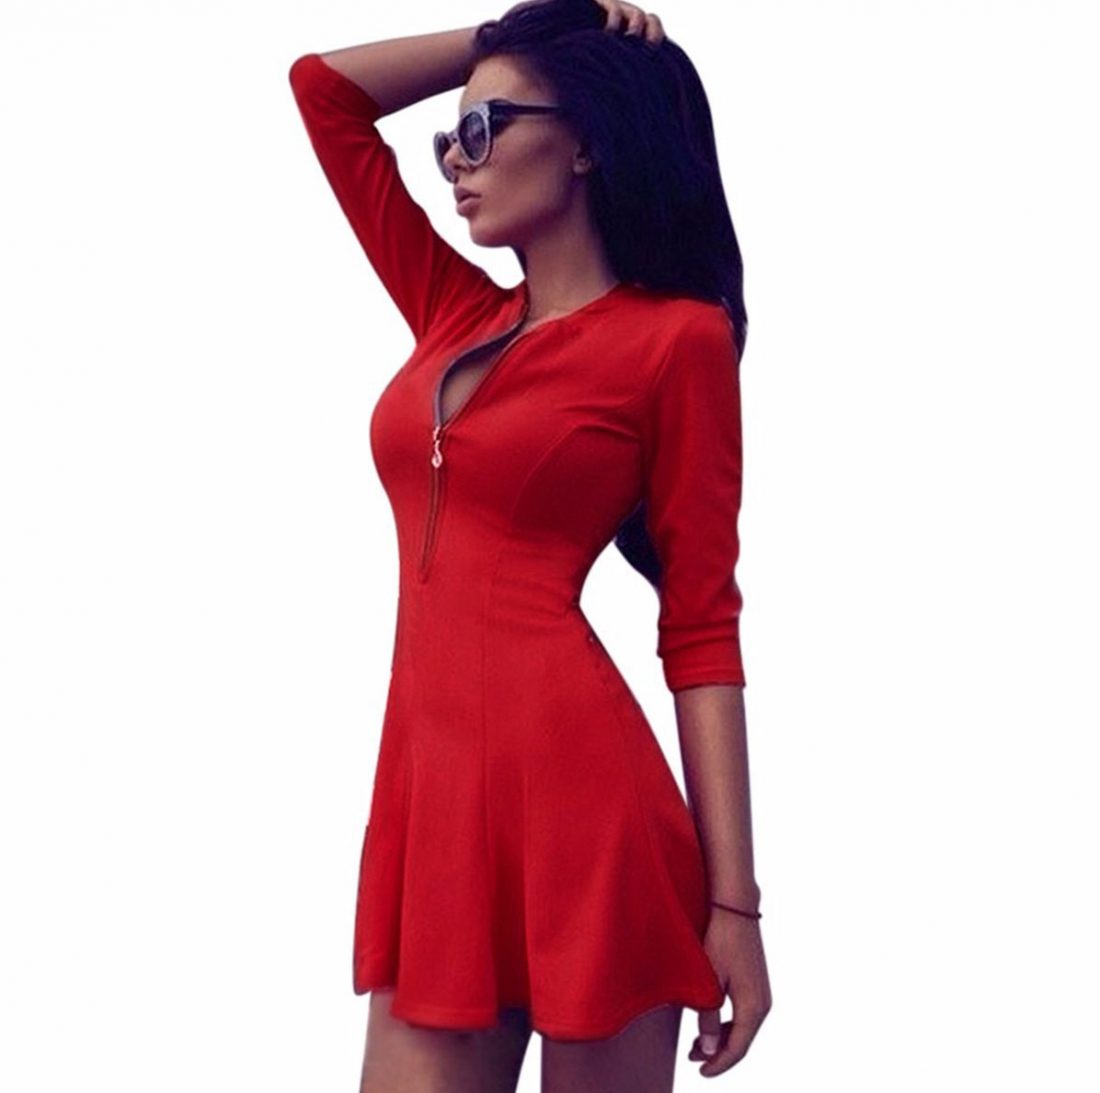 M0184 red1 Leisure Dresses maureens.com boutique